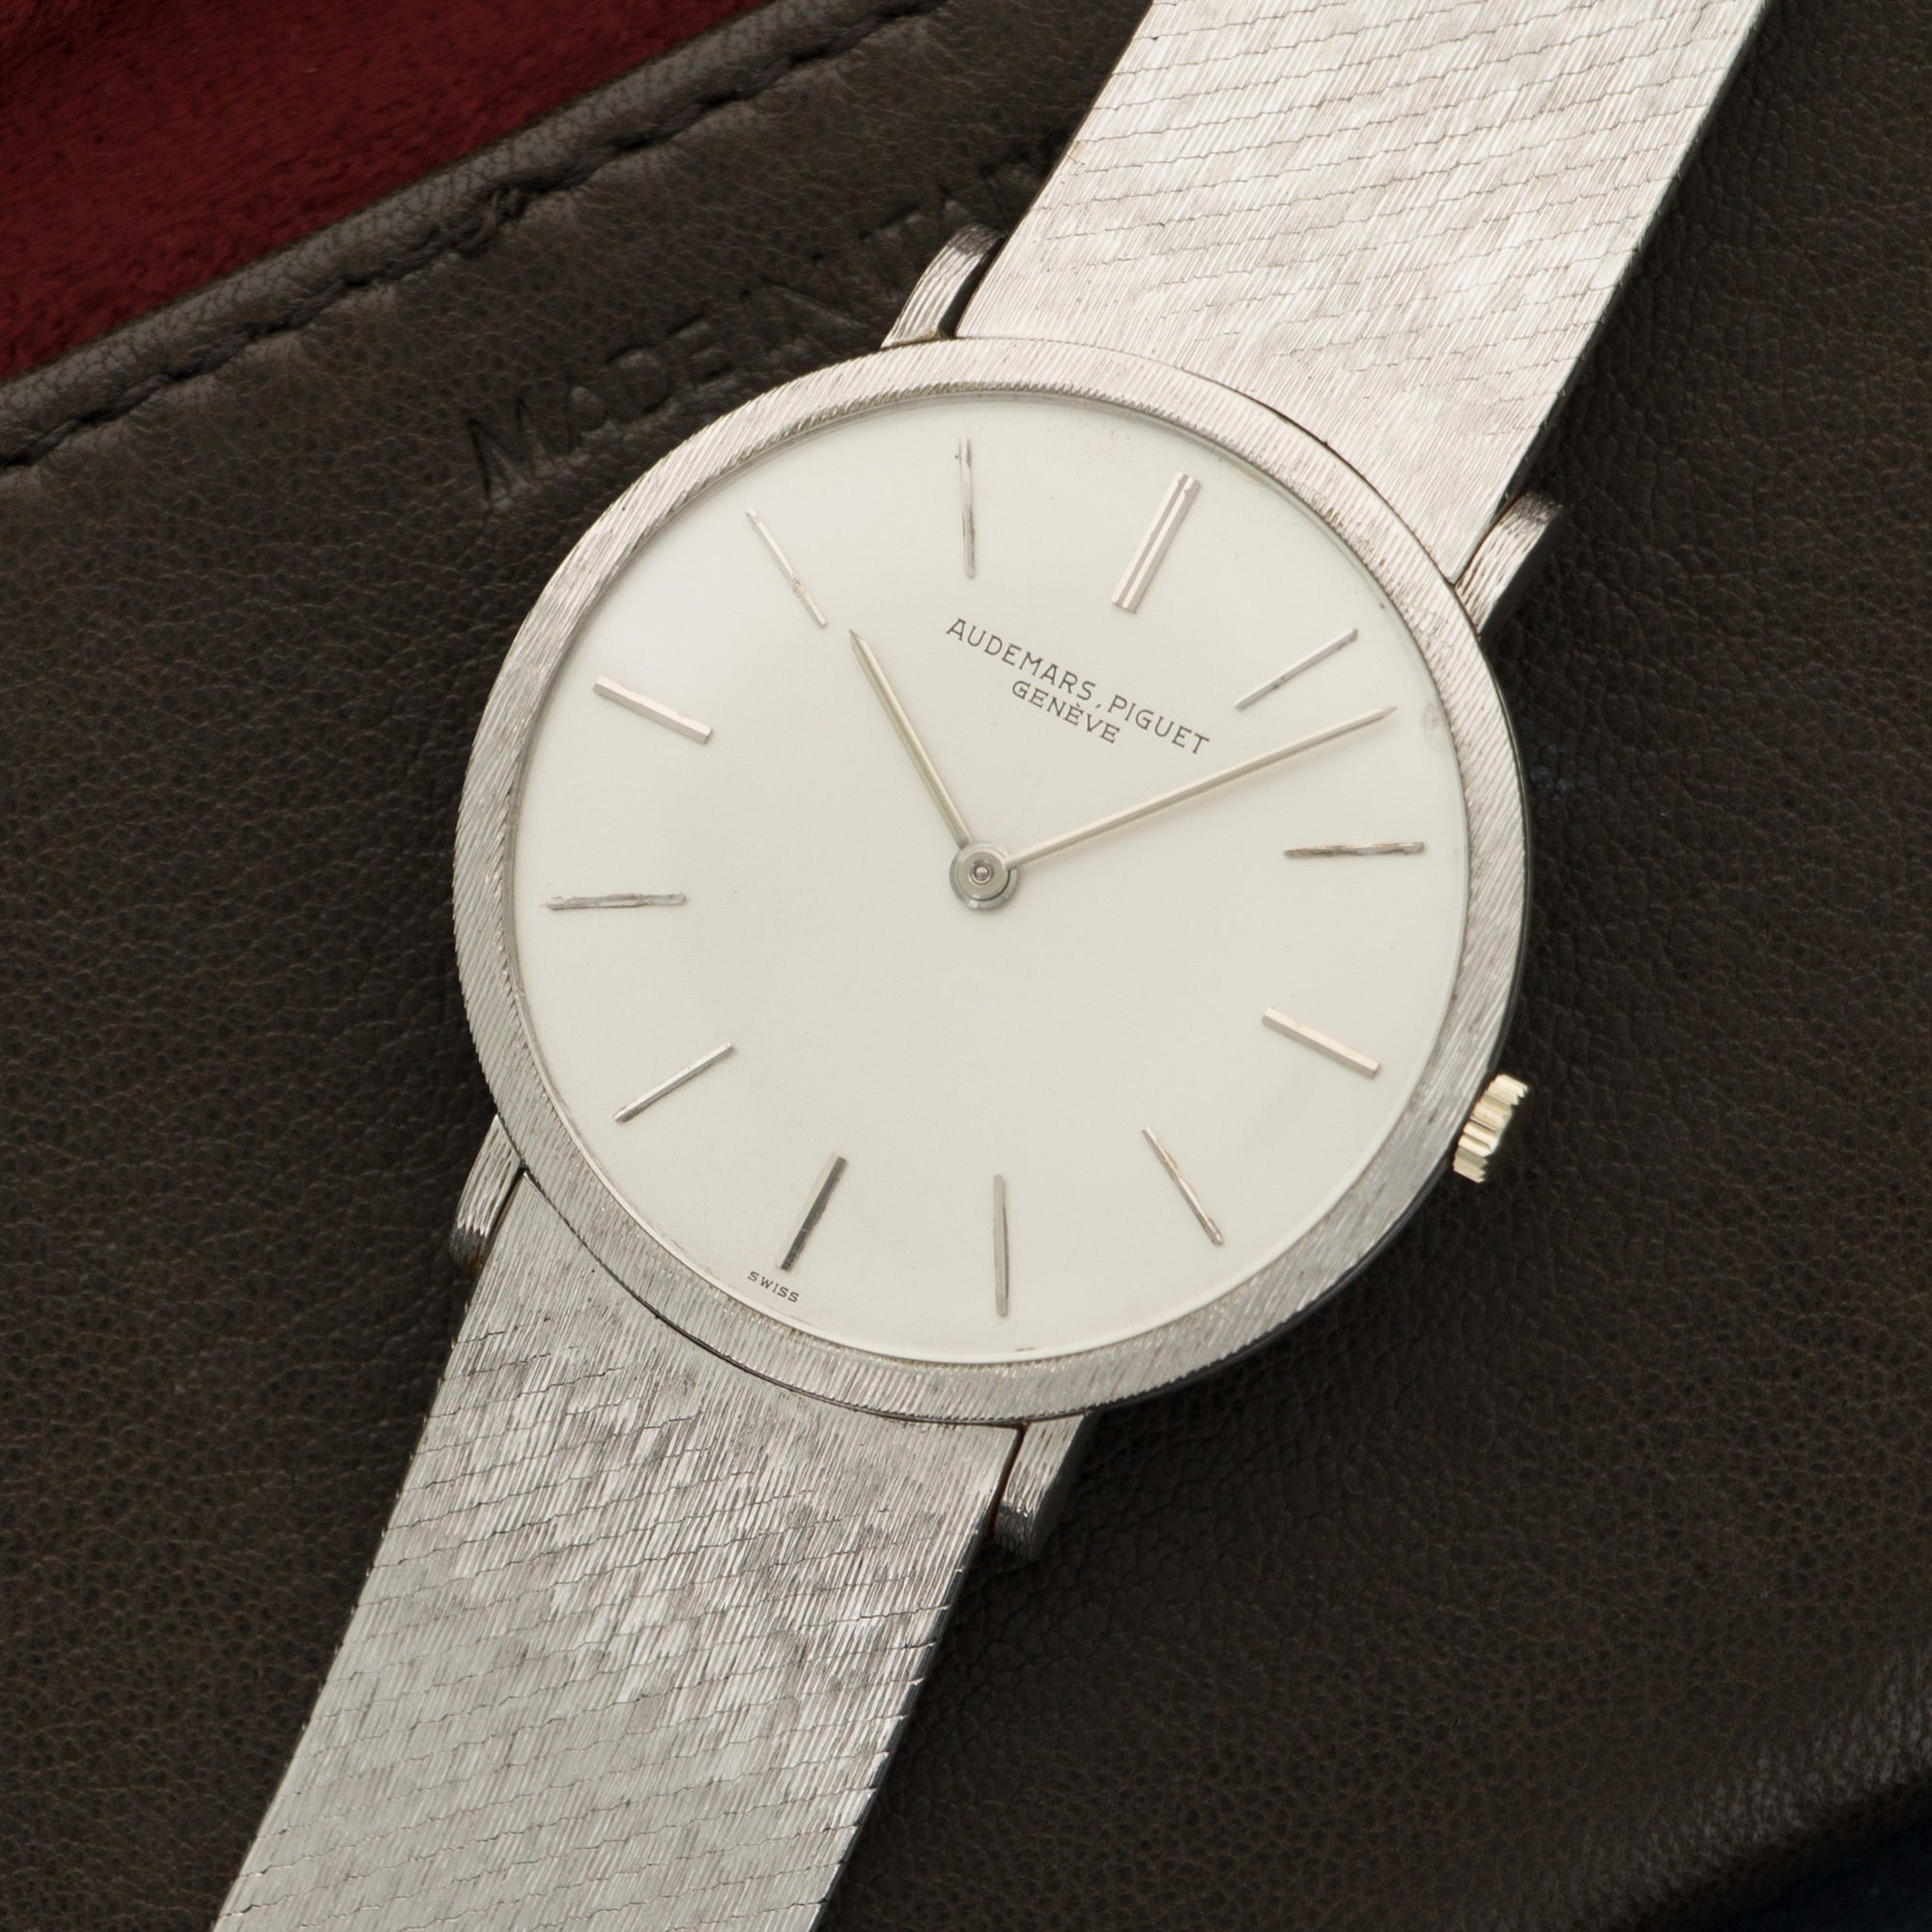 Audemars Piguet - Audemars Piguet White Gold Ultra Thin Bracelet Watch - The Keystone Watches